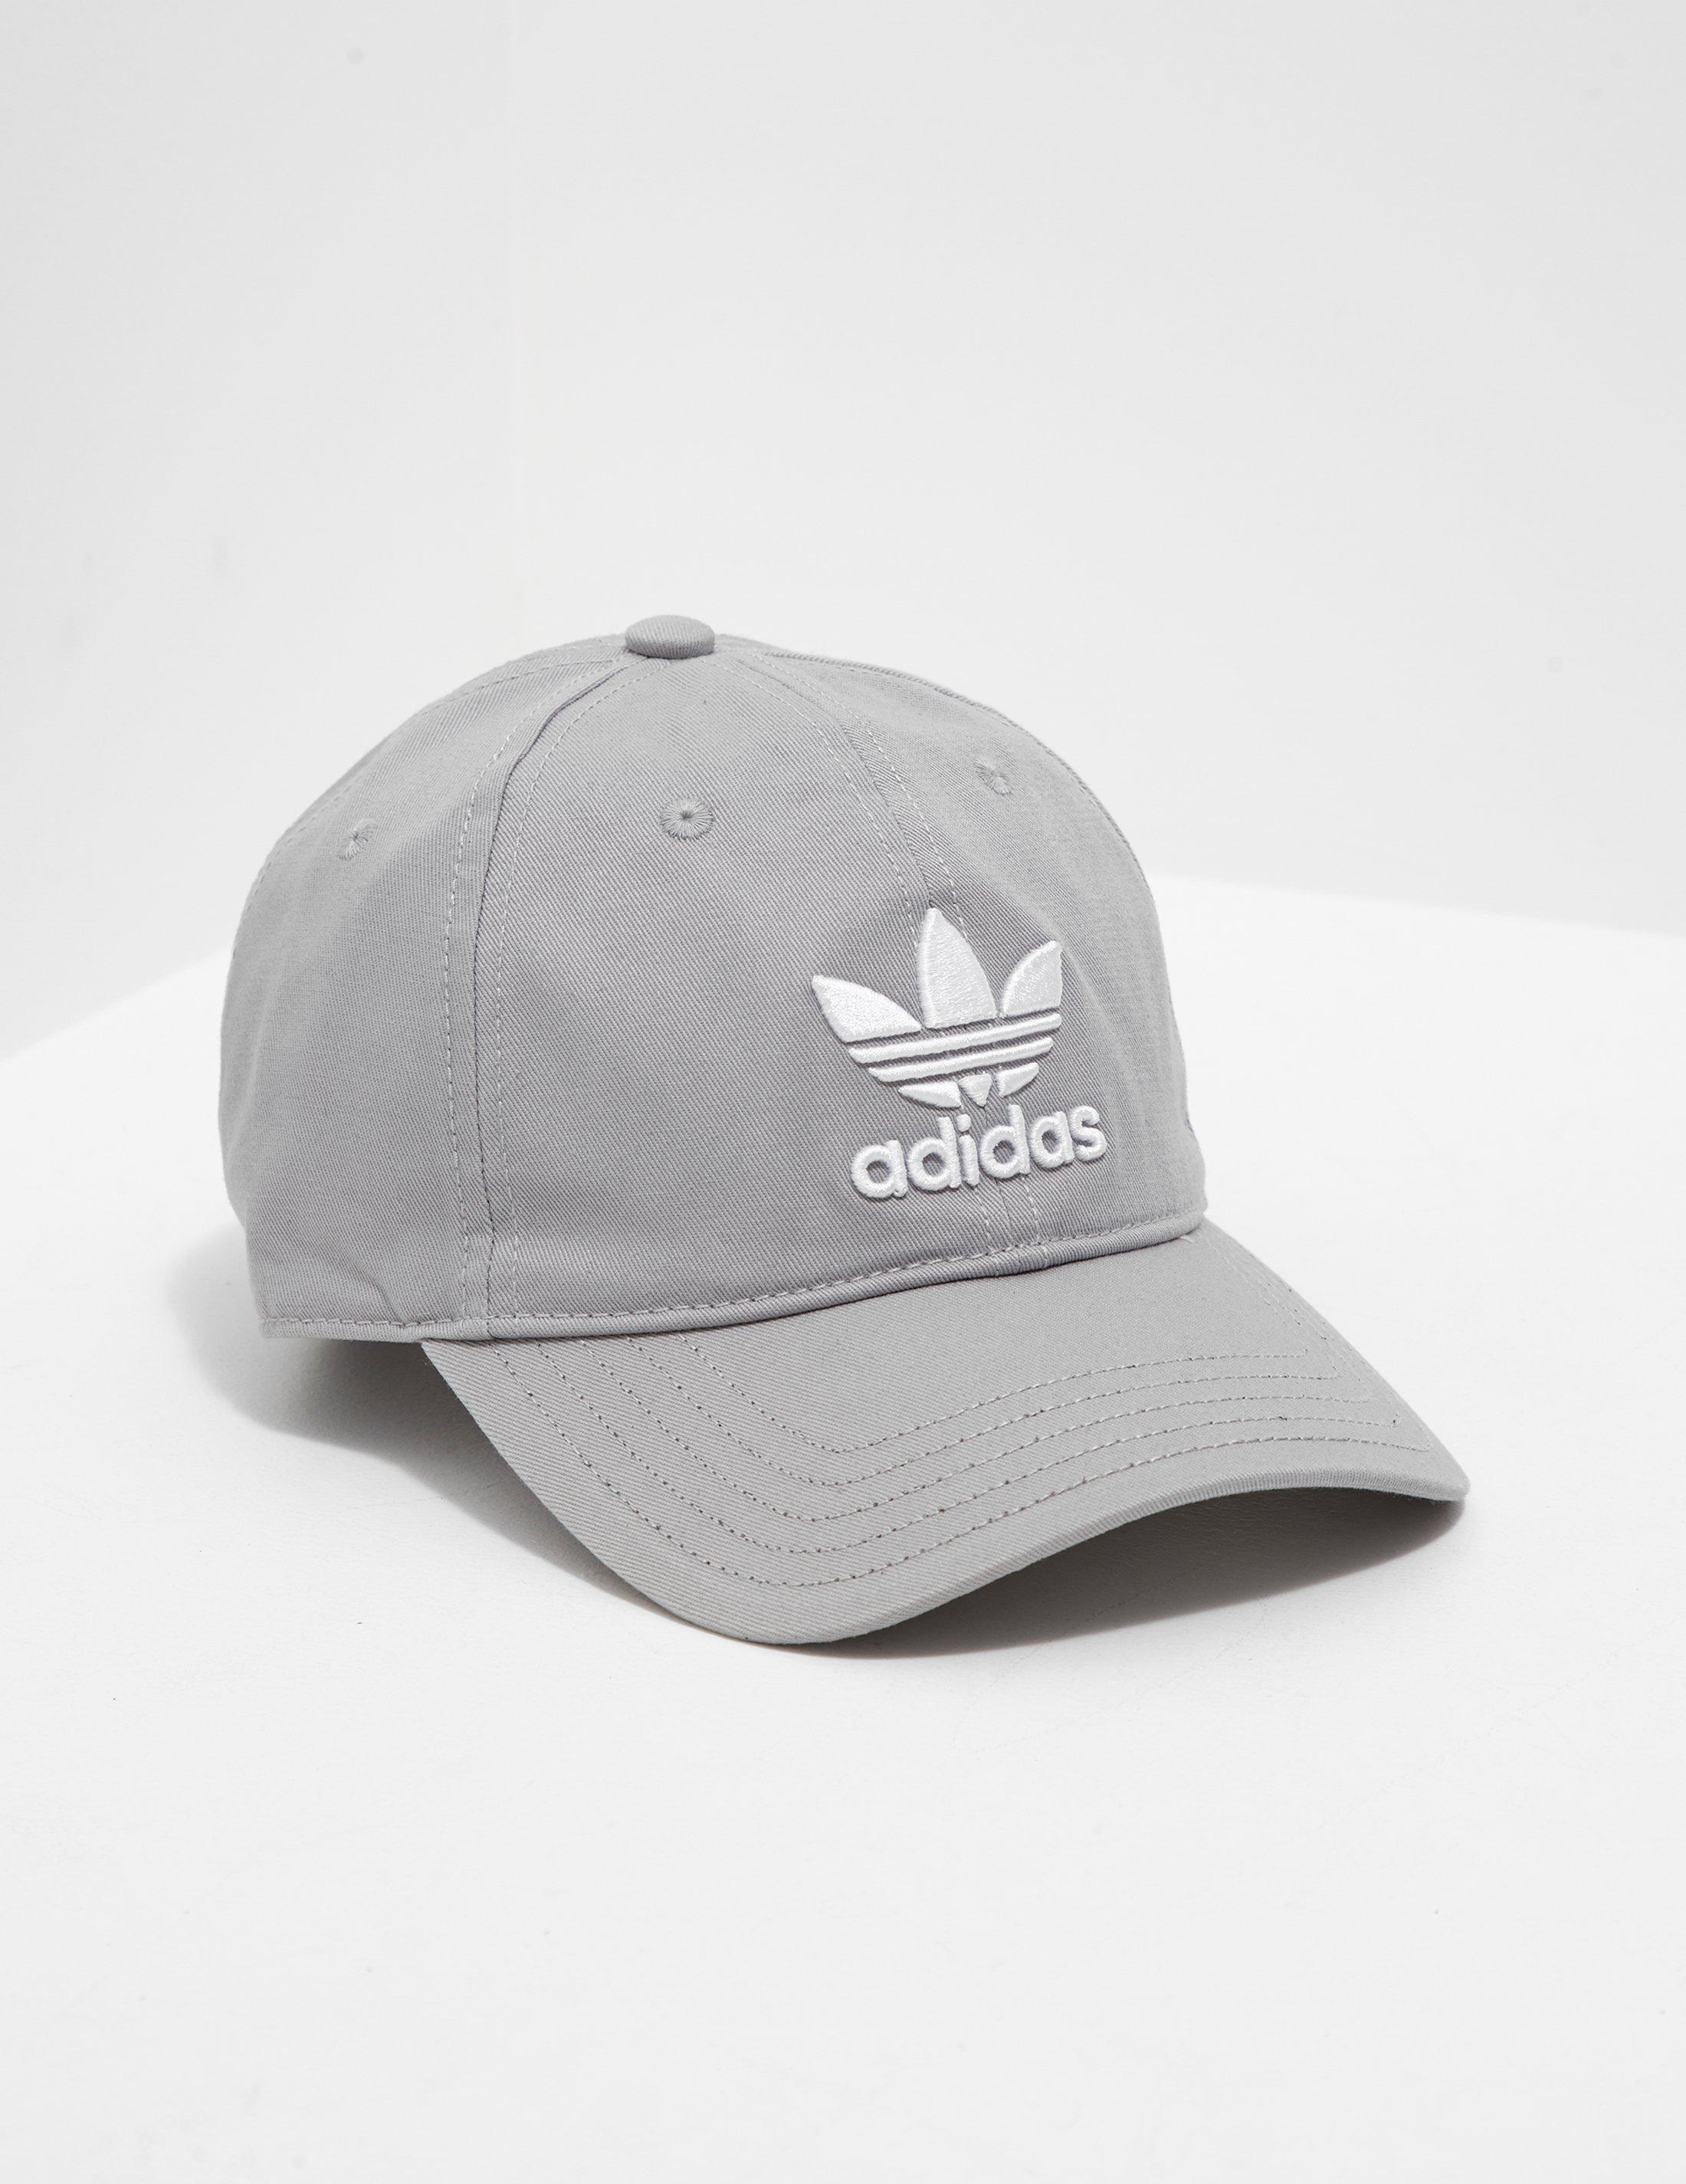 adidas trefoil classic cap